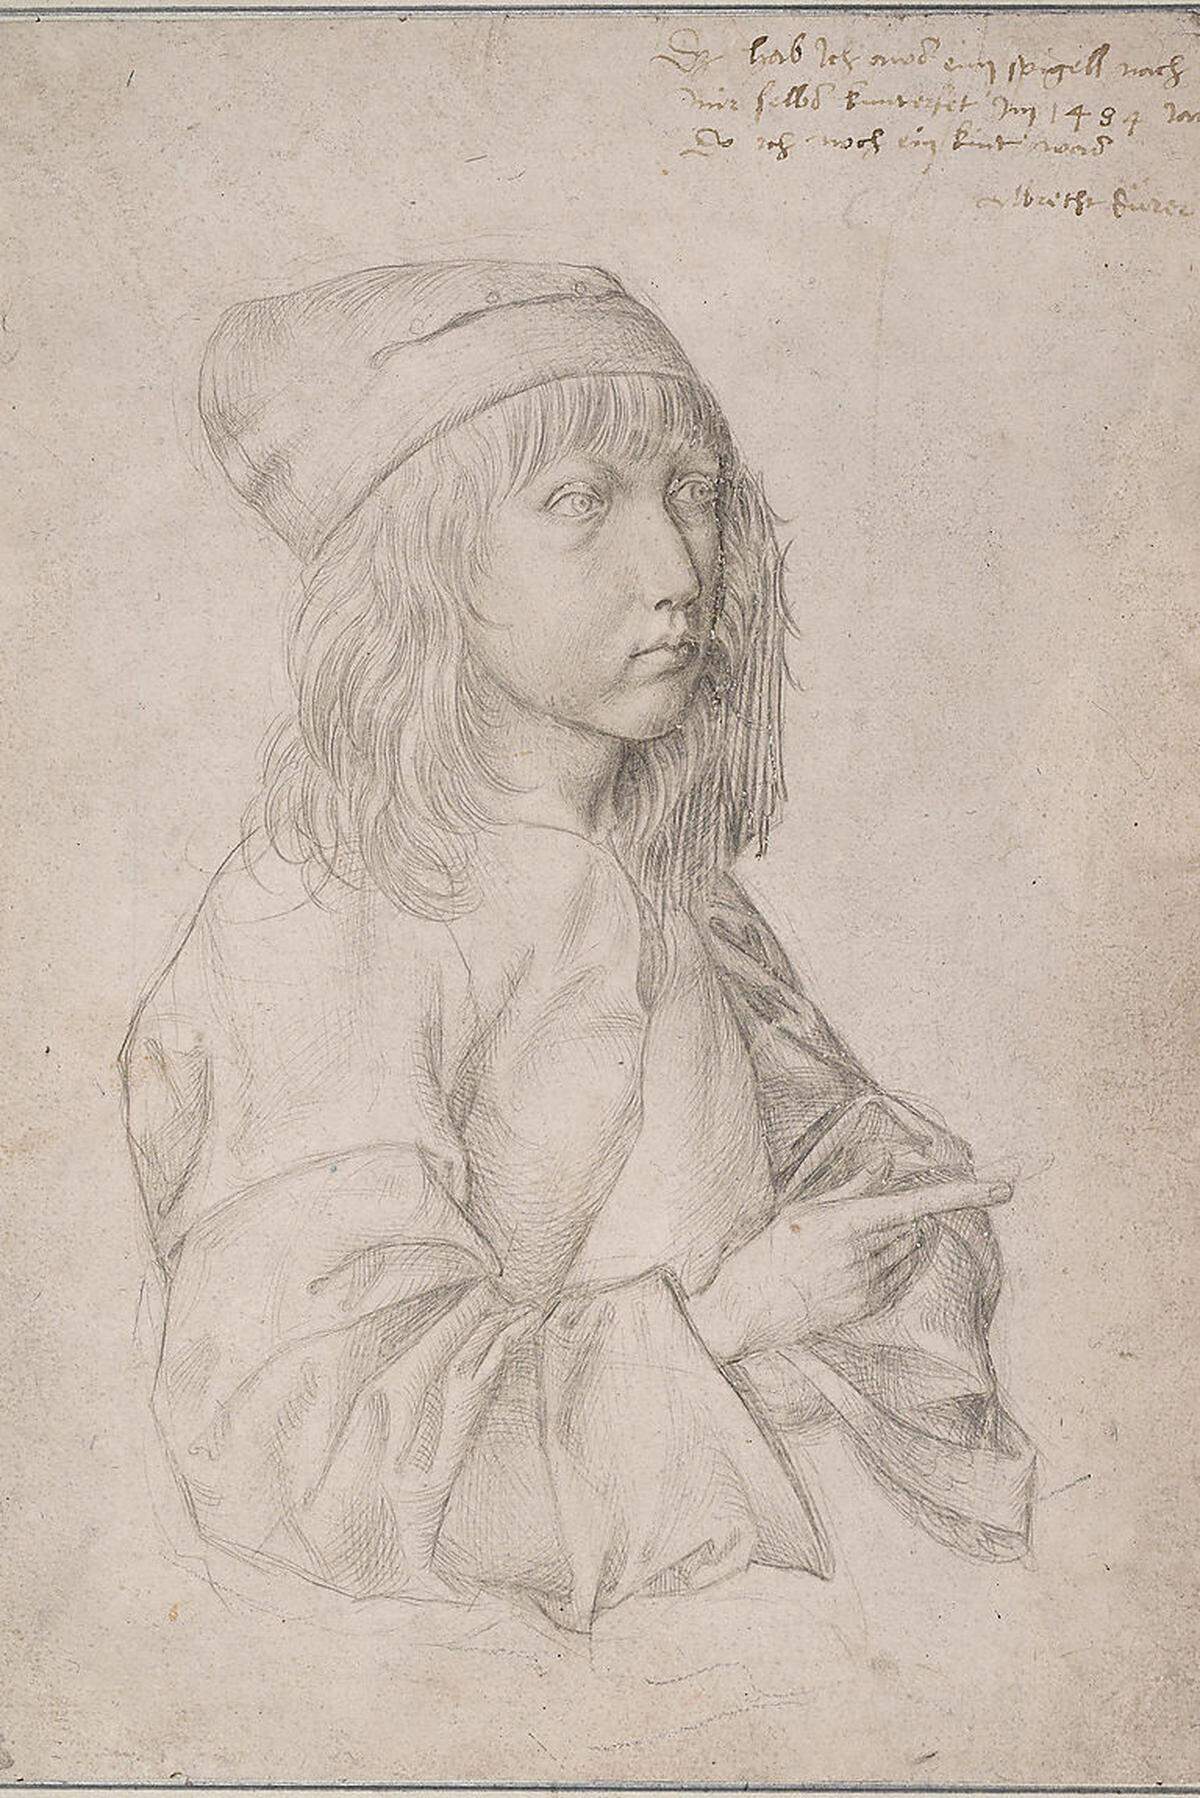 Gerade einmal 13 Jahre alt war Albrecht Dürer (1471-1528), als er 1484 seinen Vater zu einem Wettbewerb herausforderte. Die beiden nahmen vor dem Spiegel Platz, und jeder zeichnete sein Selbstporträt. Das Ergebnis sind die beiden ersten bekannten Selbstbildnisse der abendländischen Kunstgeschichte.  Albrecht Dürer: „Selbstbildnis des Dreizehnjährigen“, 1484, Silberstift auf weiß grundiertem Papier.